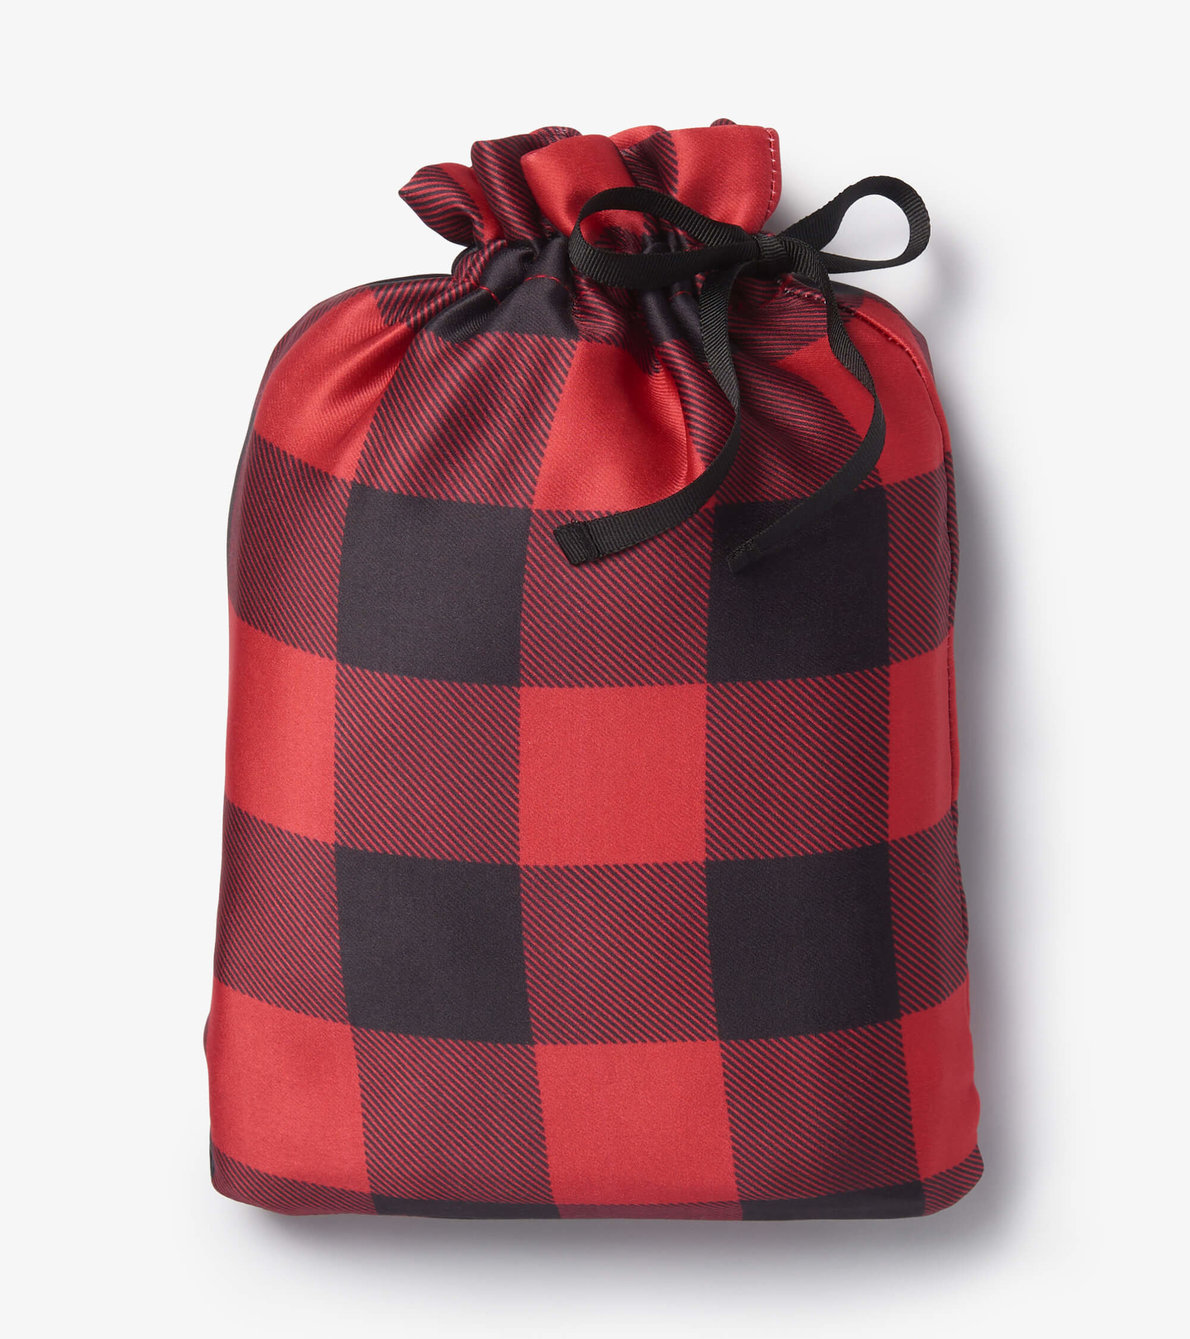 Agrandir l'image de Ensemble de sacs cadeaux réutilisables – Tartan rouge et noir